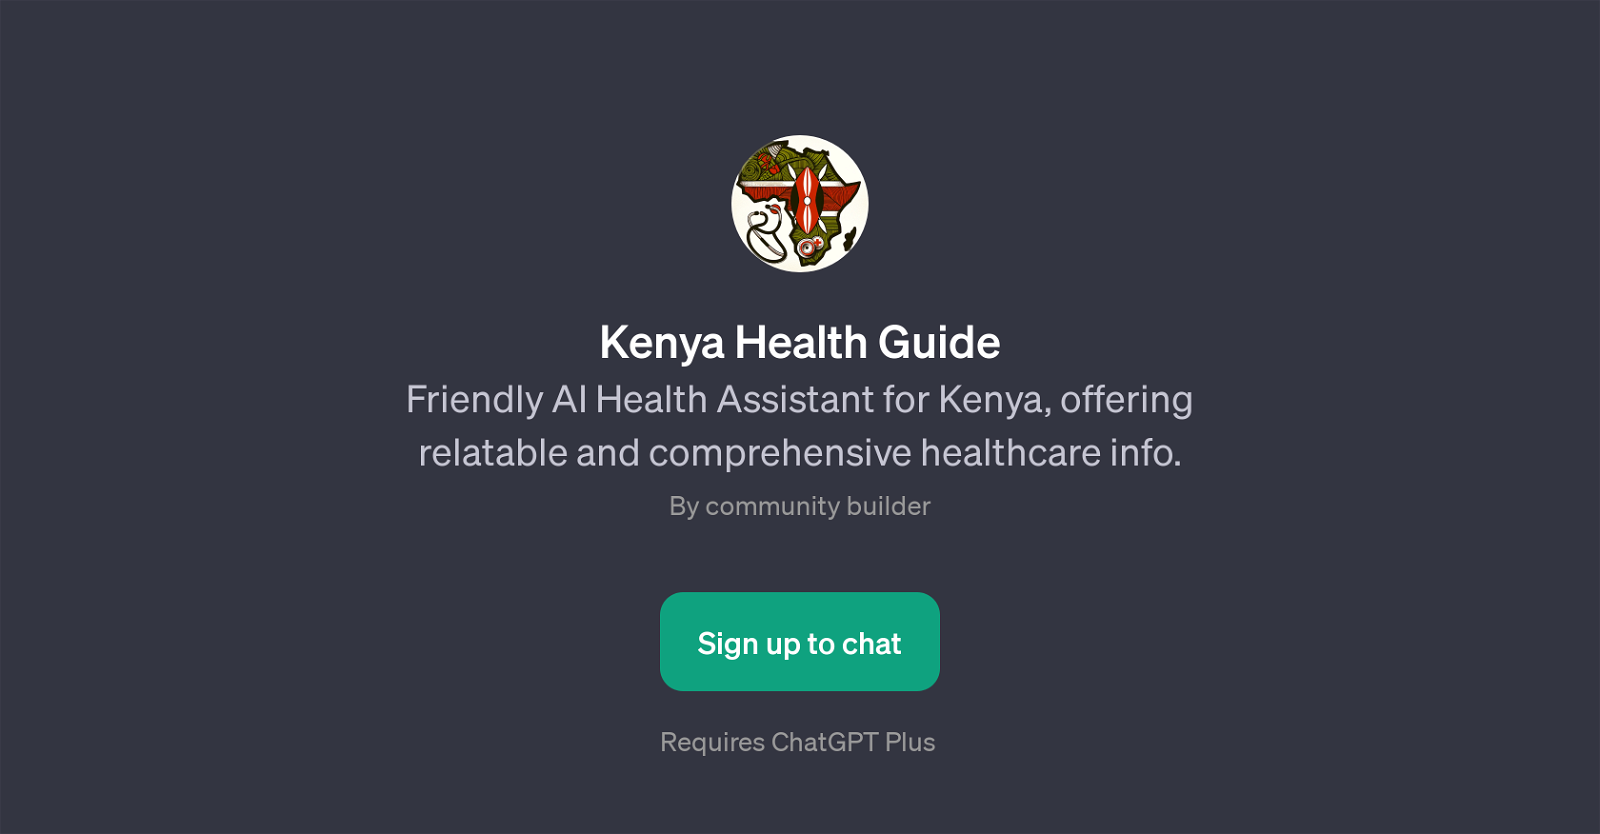 Kenya Health Guide website